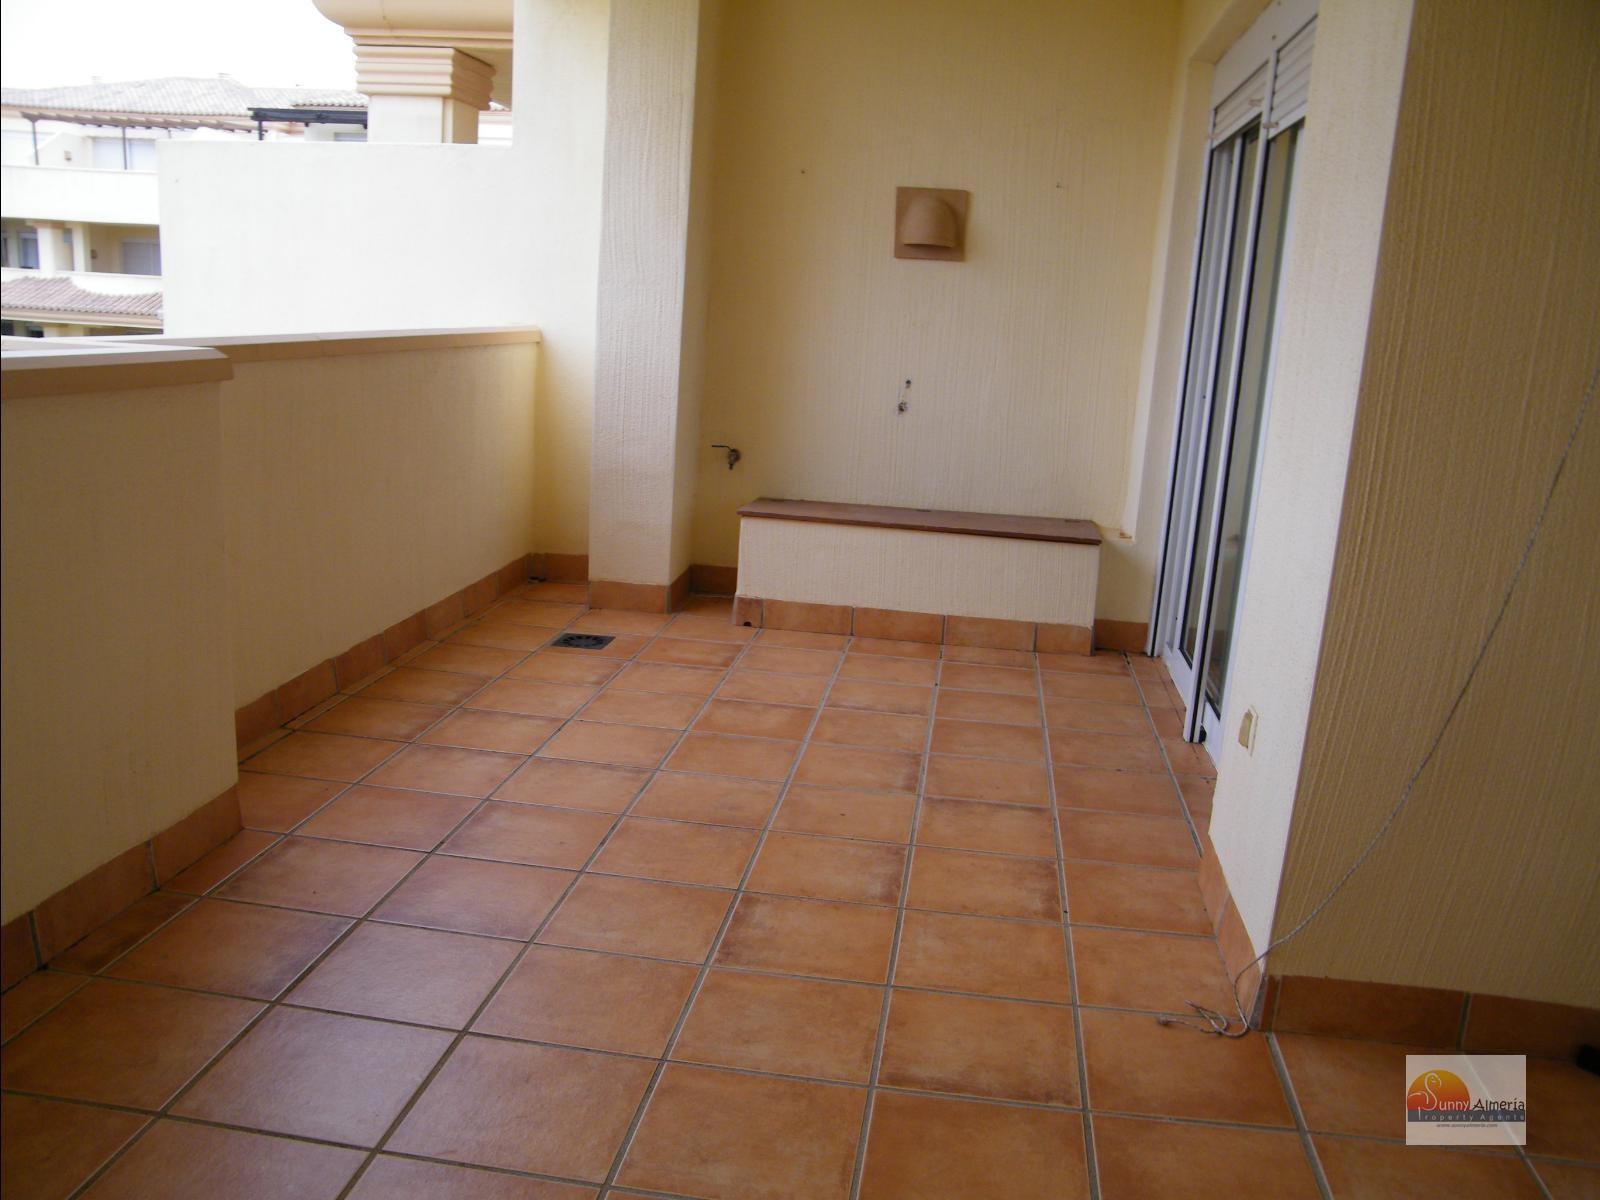 Appartamento de Lusso in affitto a Calle Fosforito 4 (Roquetas de Mar), 900 €/mese (Stagione)